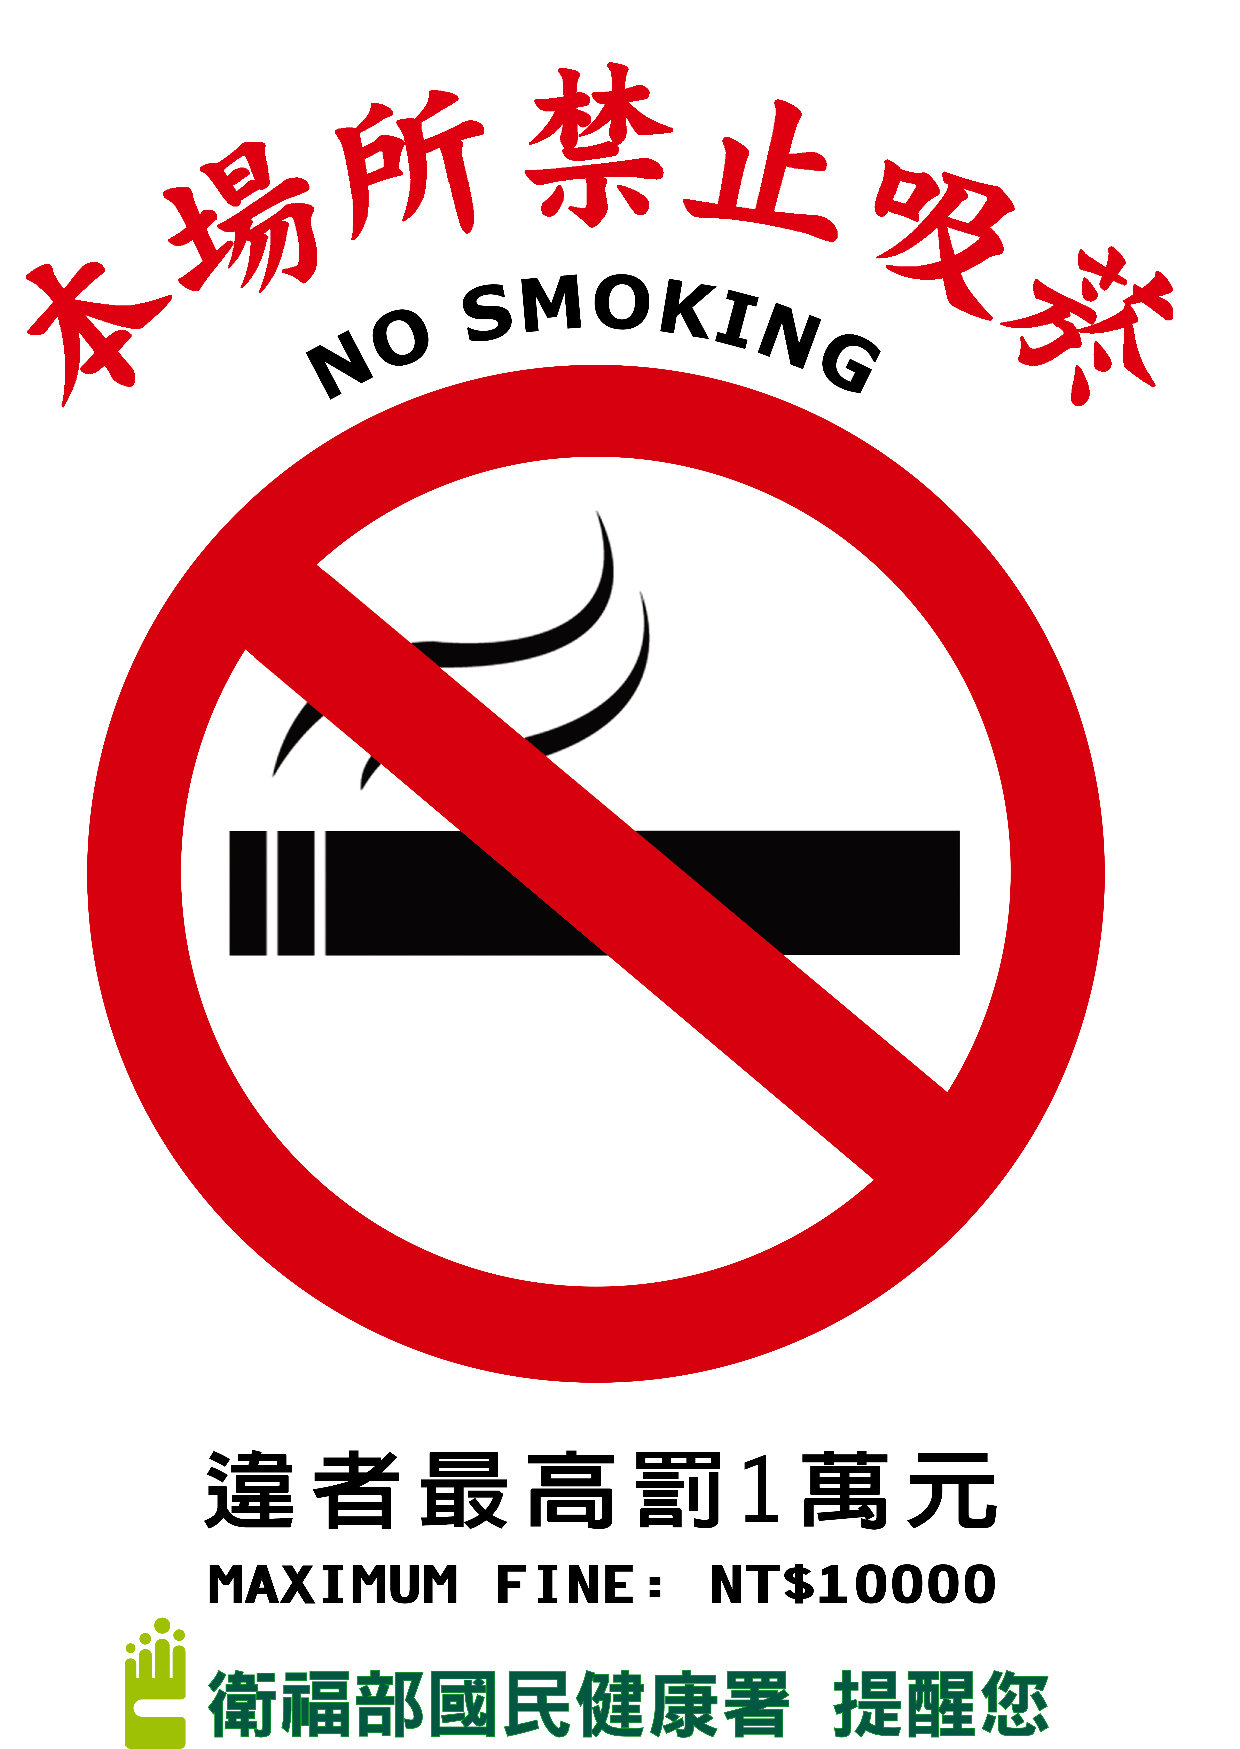 本場所禁止吸菸，違者最高罰1萬元(海報-A3)文章照片